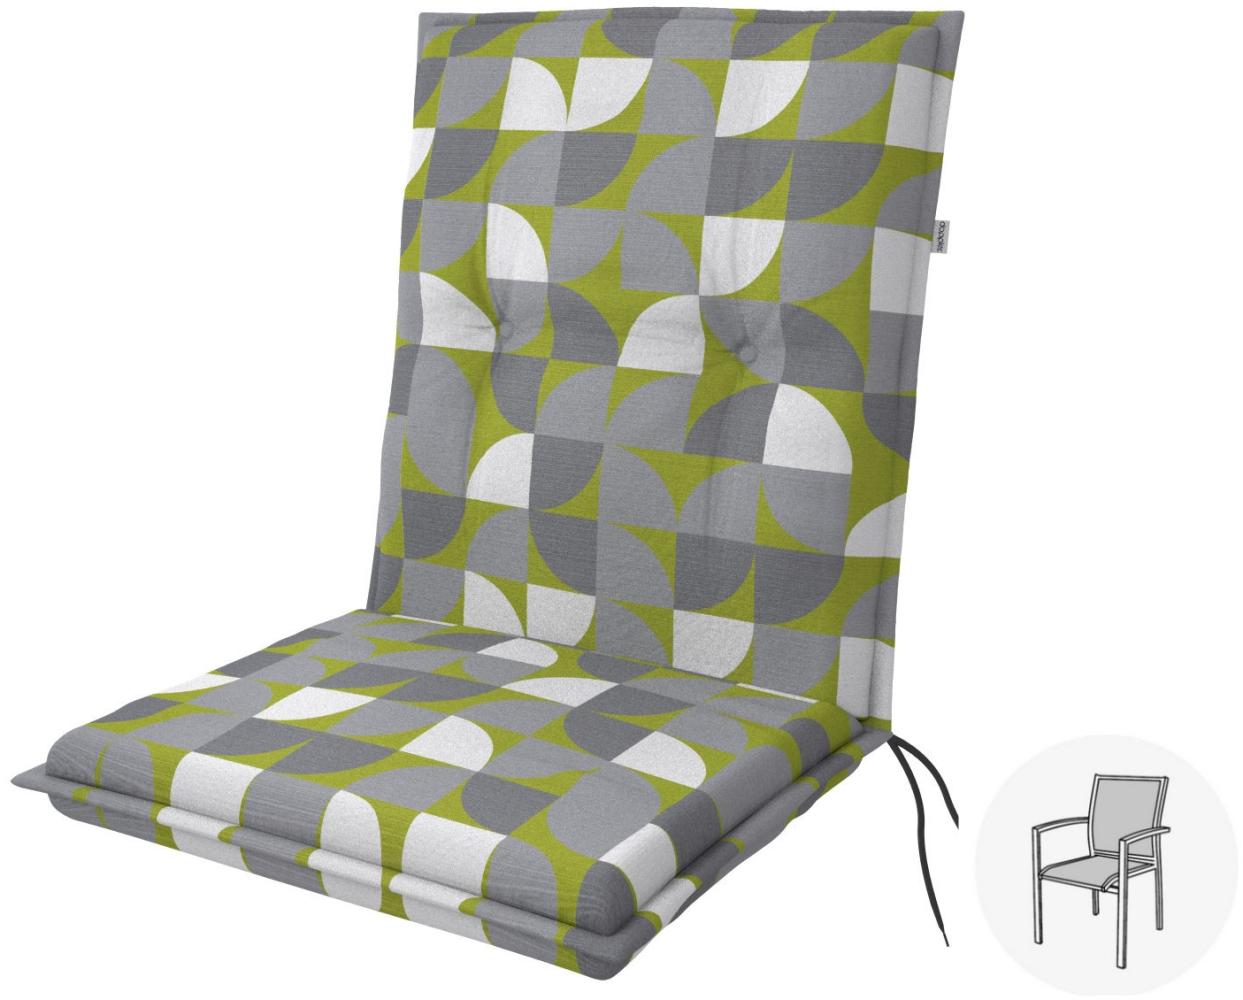 Doppler Sitzauflage "Living" Low, kreis grün, für Niederlehner (100 x 48 x 6 cm) Bild 1